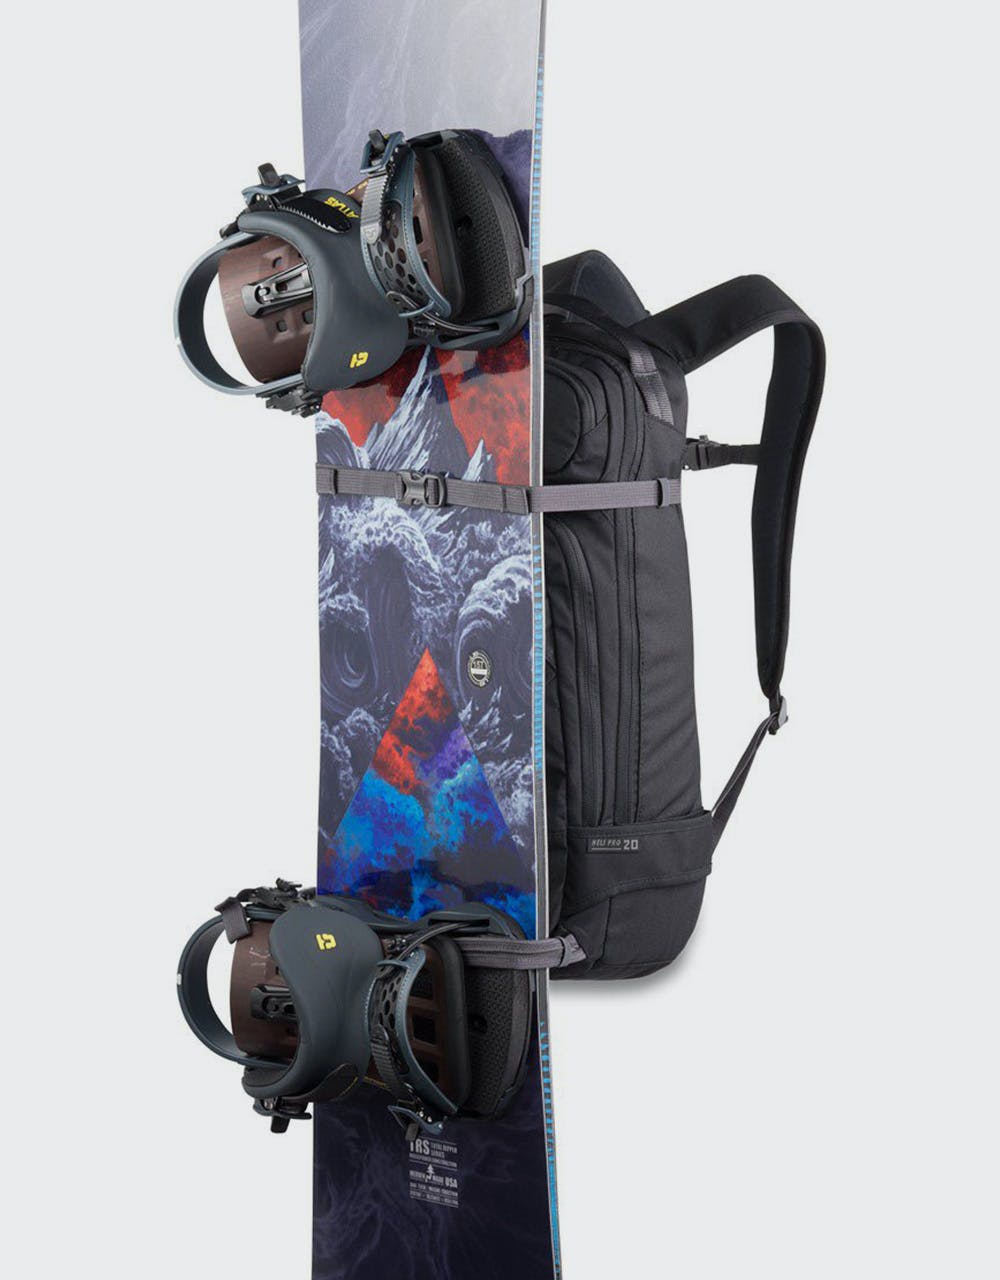 Dakine Heli Pro 20L Backpack - Squall